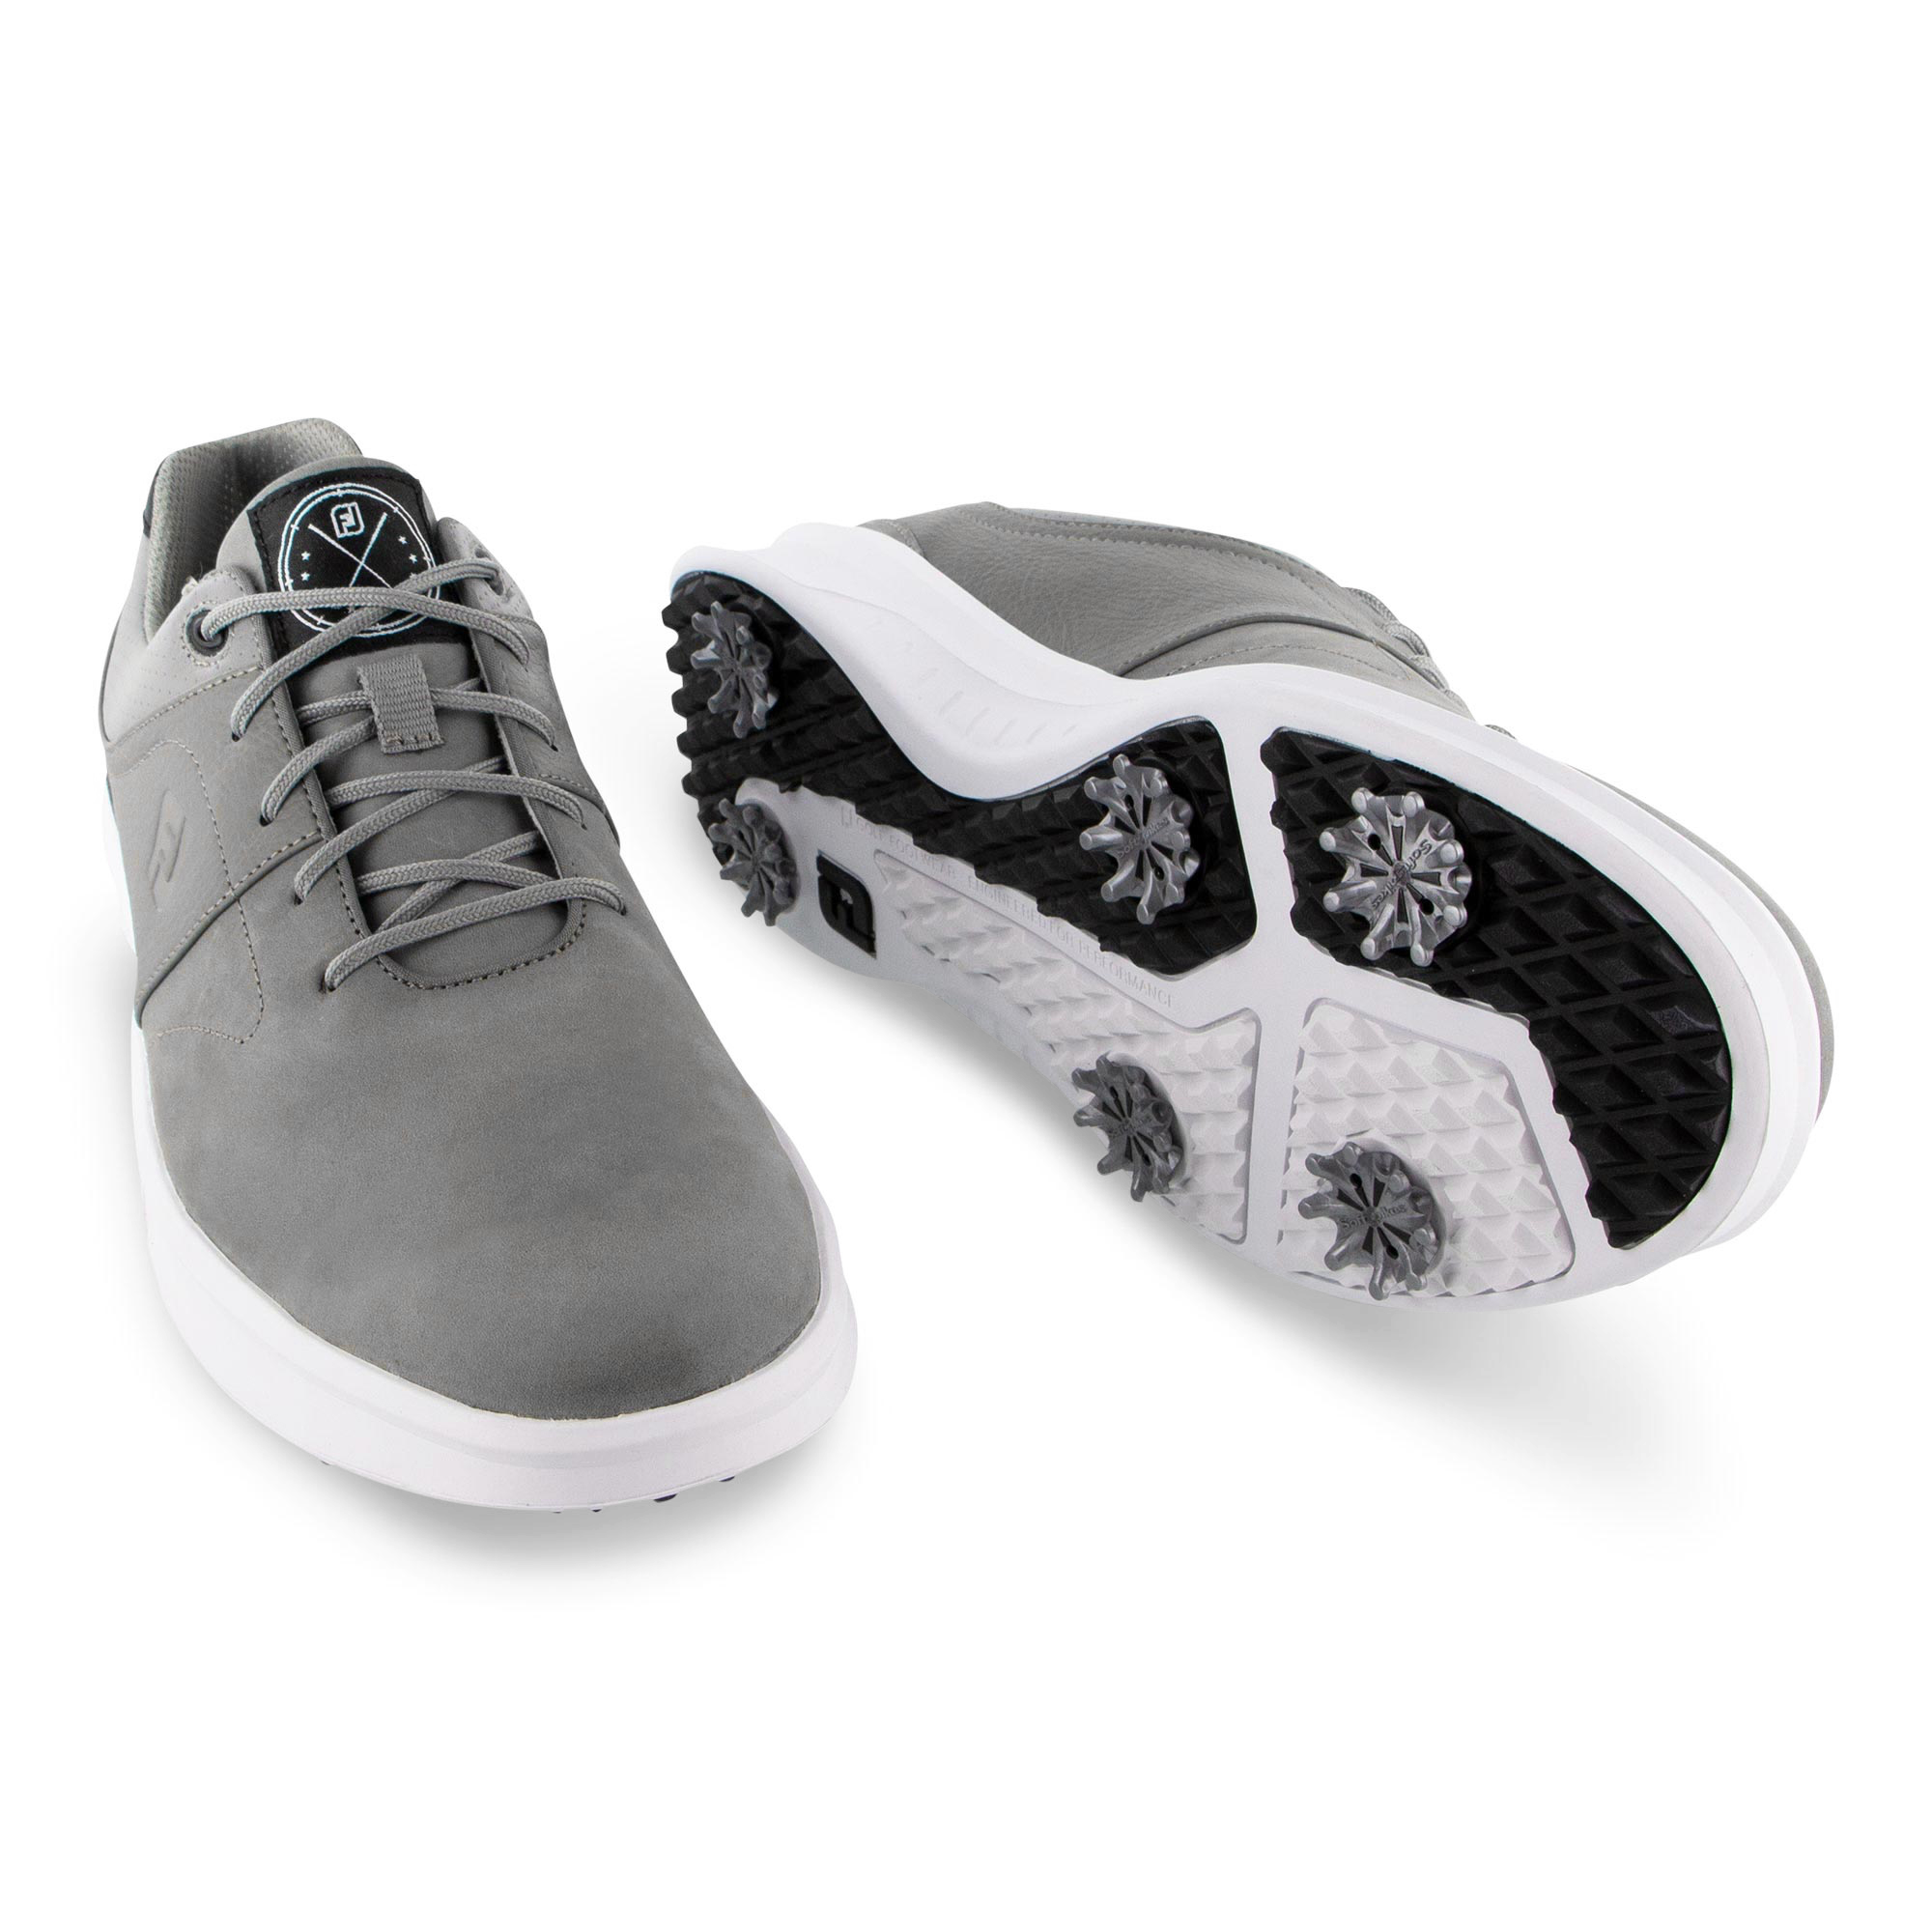 footjoy contour golf shoes size 10